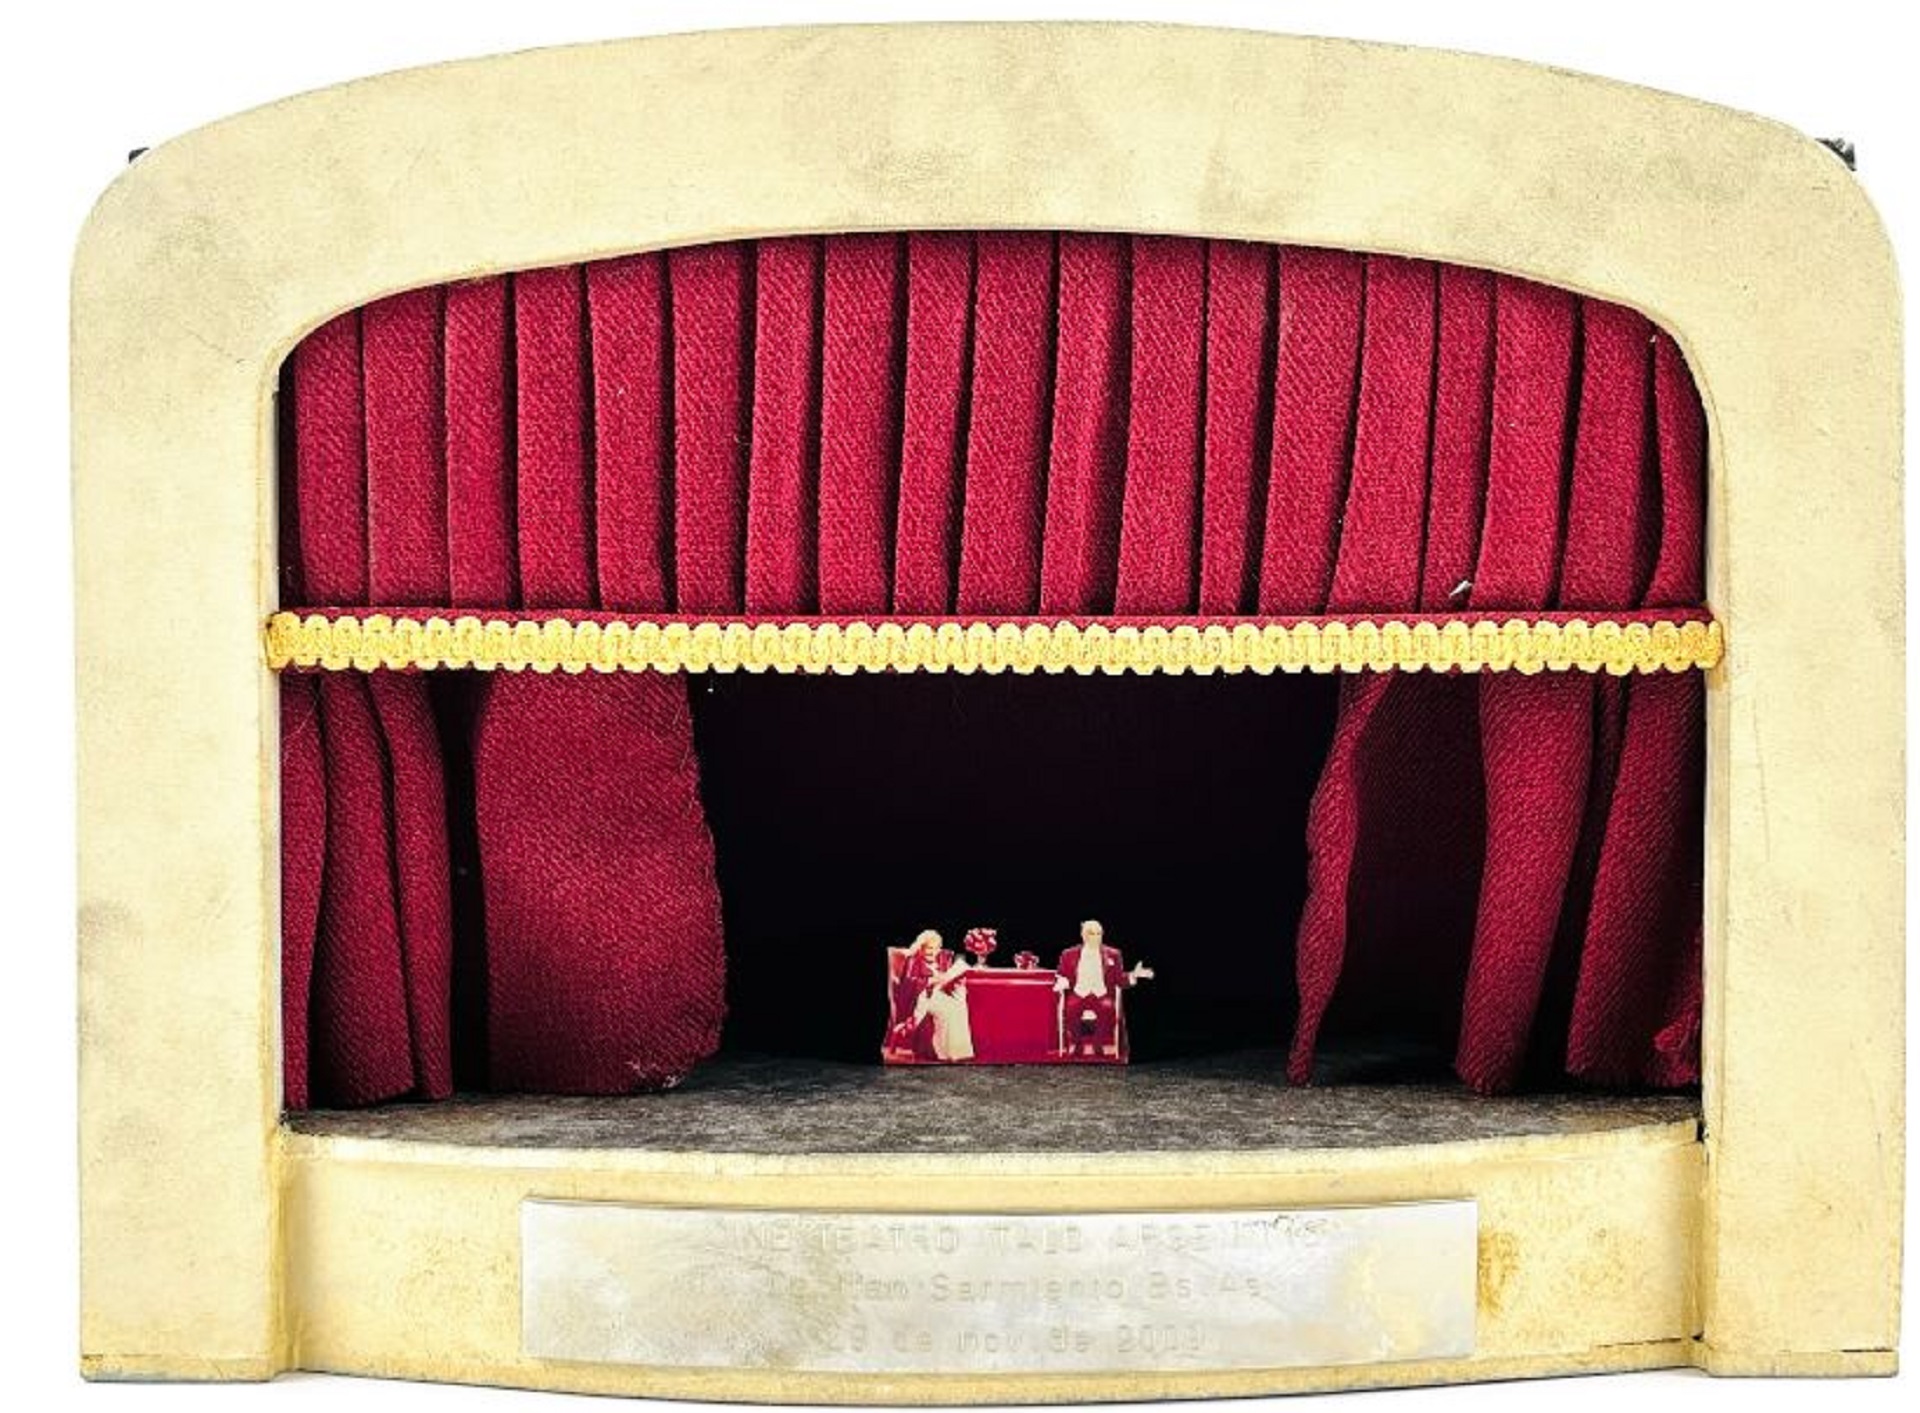 Escenario teatral en miniatura con figuras de China Zorrilla y Carlos Perciavalle (Uruguay, 1941) durante la representación de “El diario privado de Adán y Eva”, obra teatral estrenada en la ciudad de Buenos Aires en 2004. 28 x 25 x 11 cm. Precio Base 150 dólares